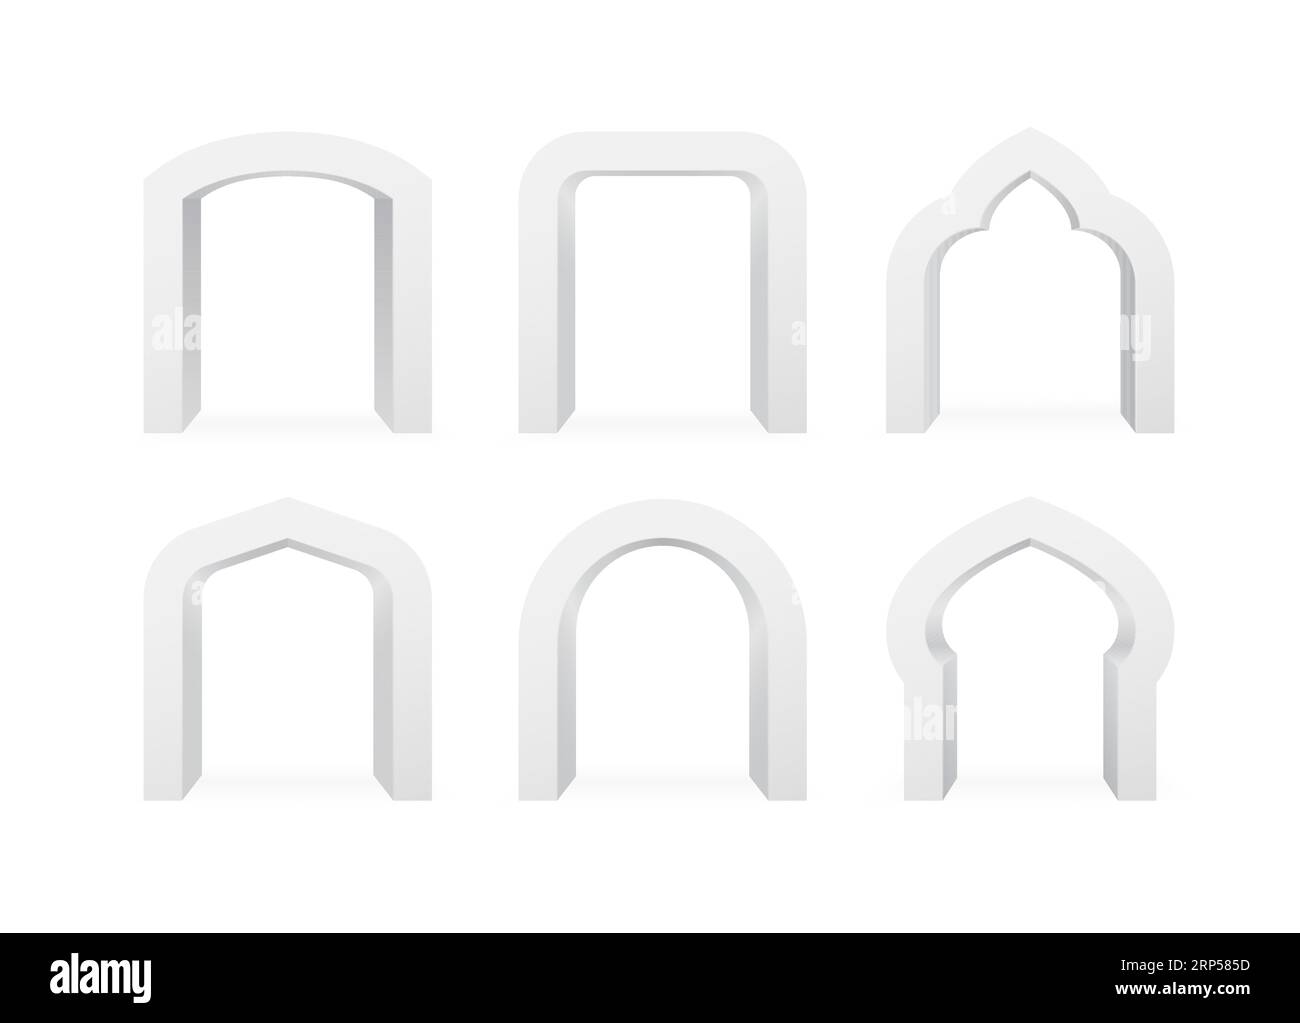 Set aus realistischen Bögen verschiedener Formen, 3D-Elemente der Bogenvorlage auf weißem Hintergrund isoliert. Bogen für Innenräume, Typografie oder Werbung. Stock Vektor